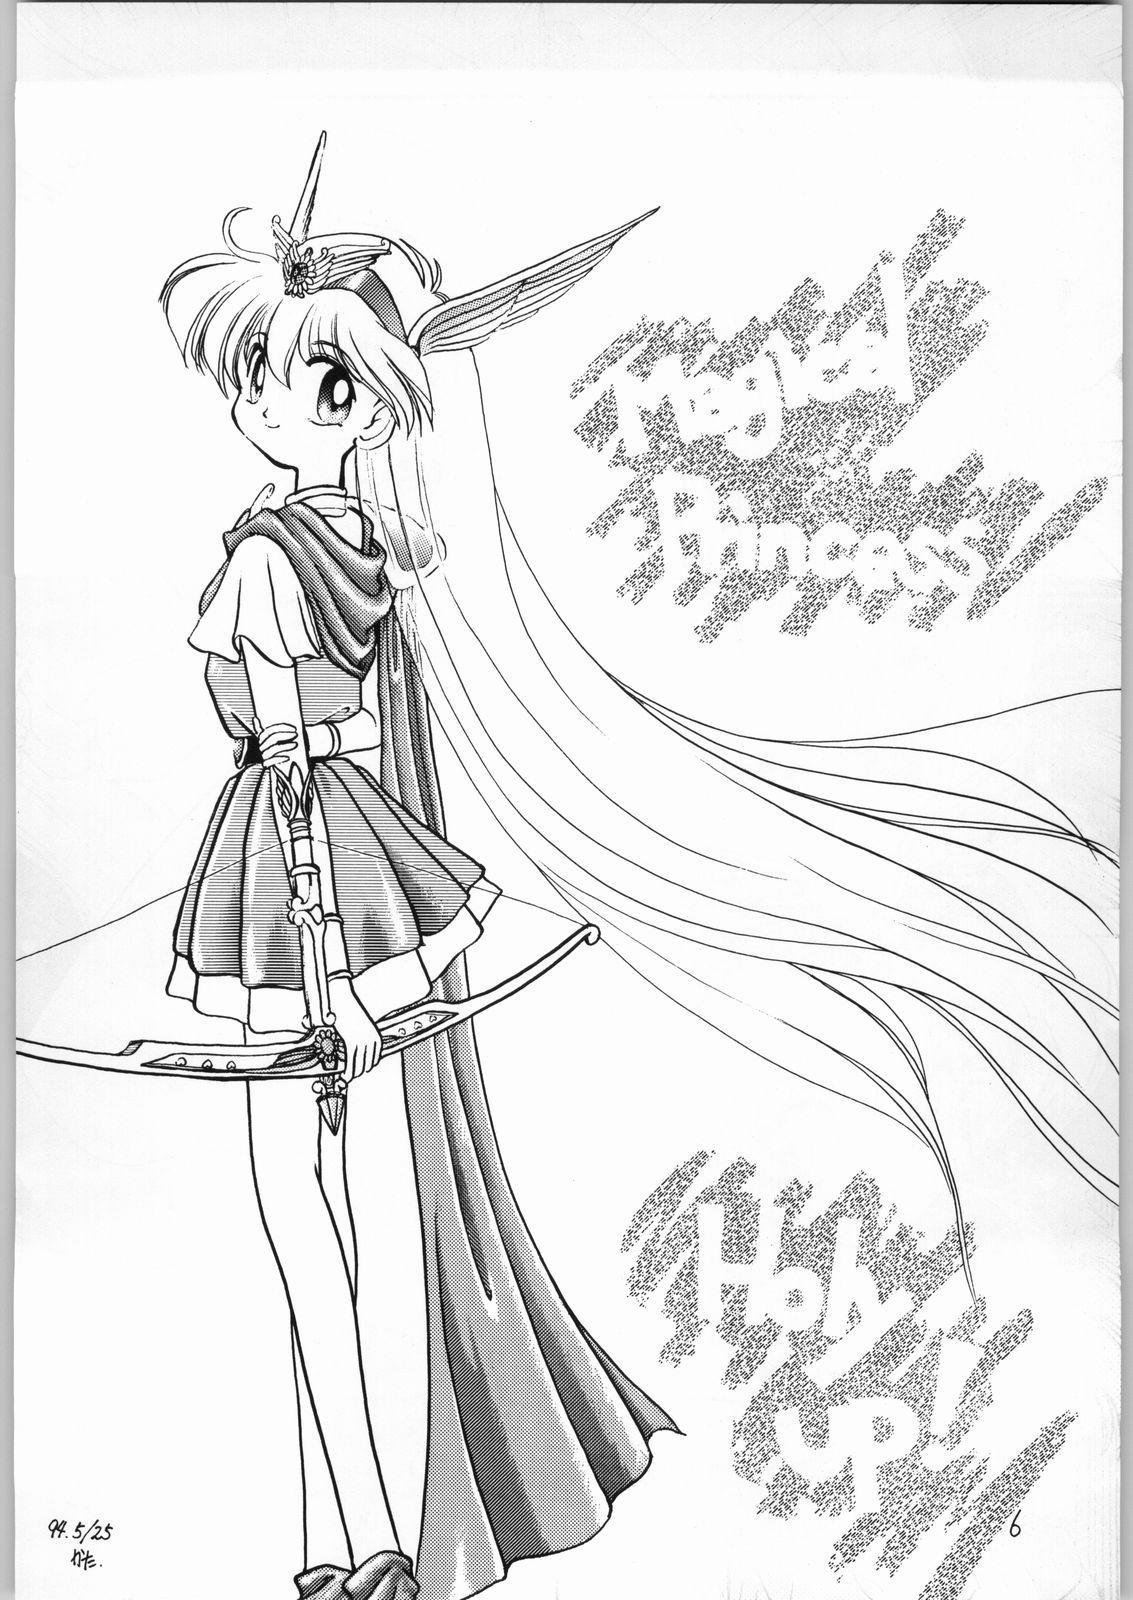 Big Boobs Dance of Princess 3 - Sailor moon Tenchi muyo Akazukin cha cha Minky momo Ng knight lamune and 40 Asslicking - Page 5